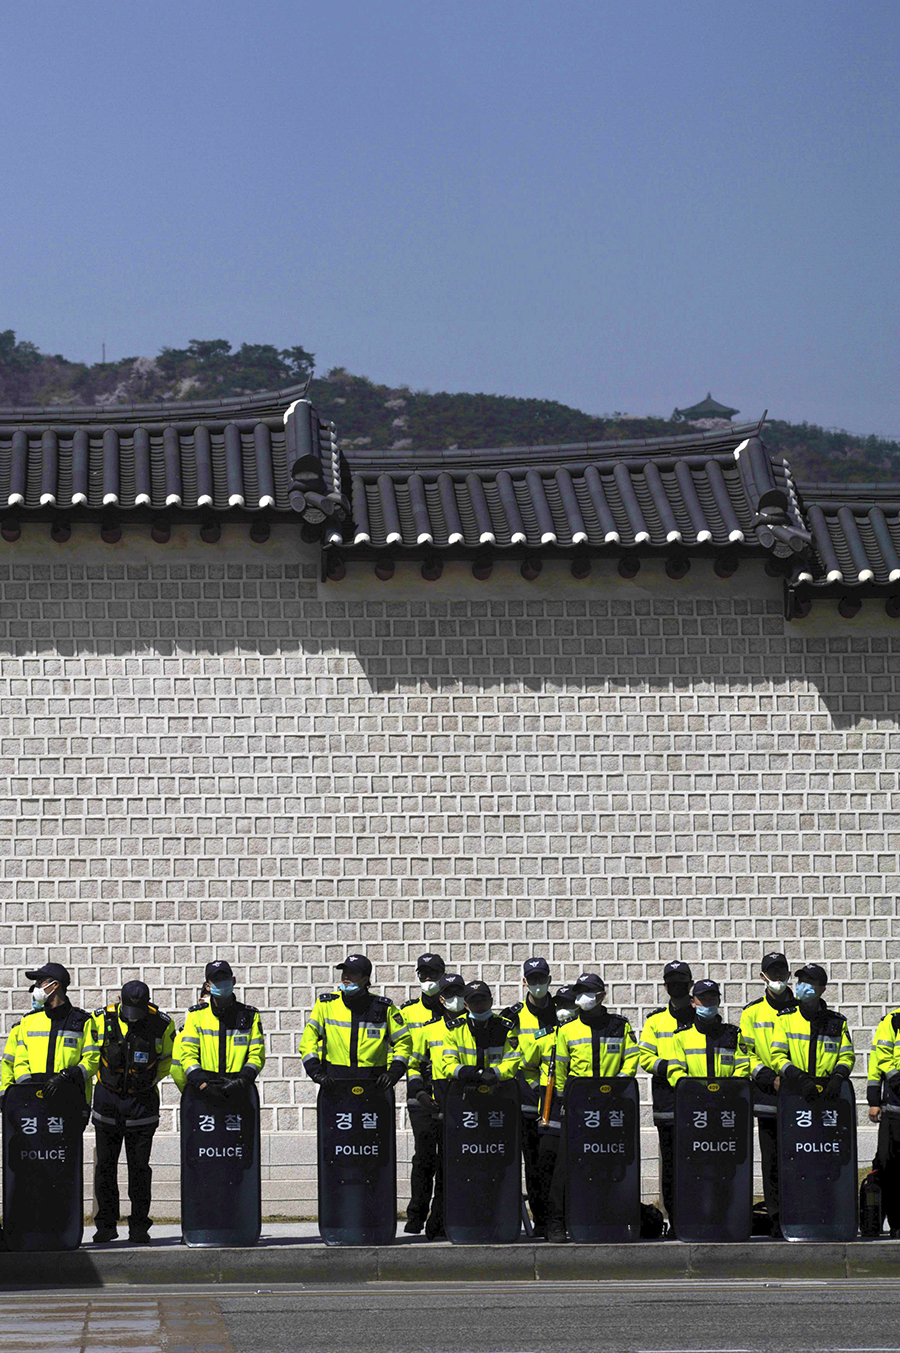 A Police Unit in front of the Old Wall